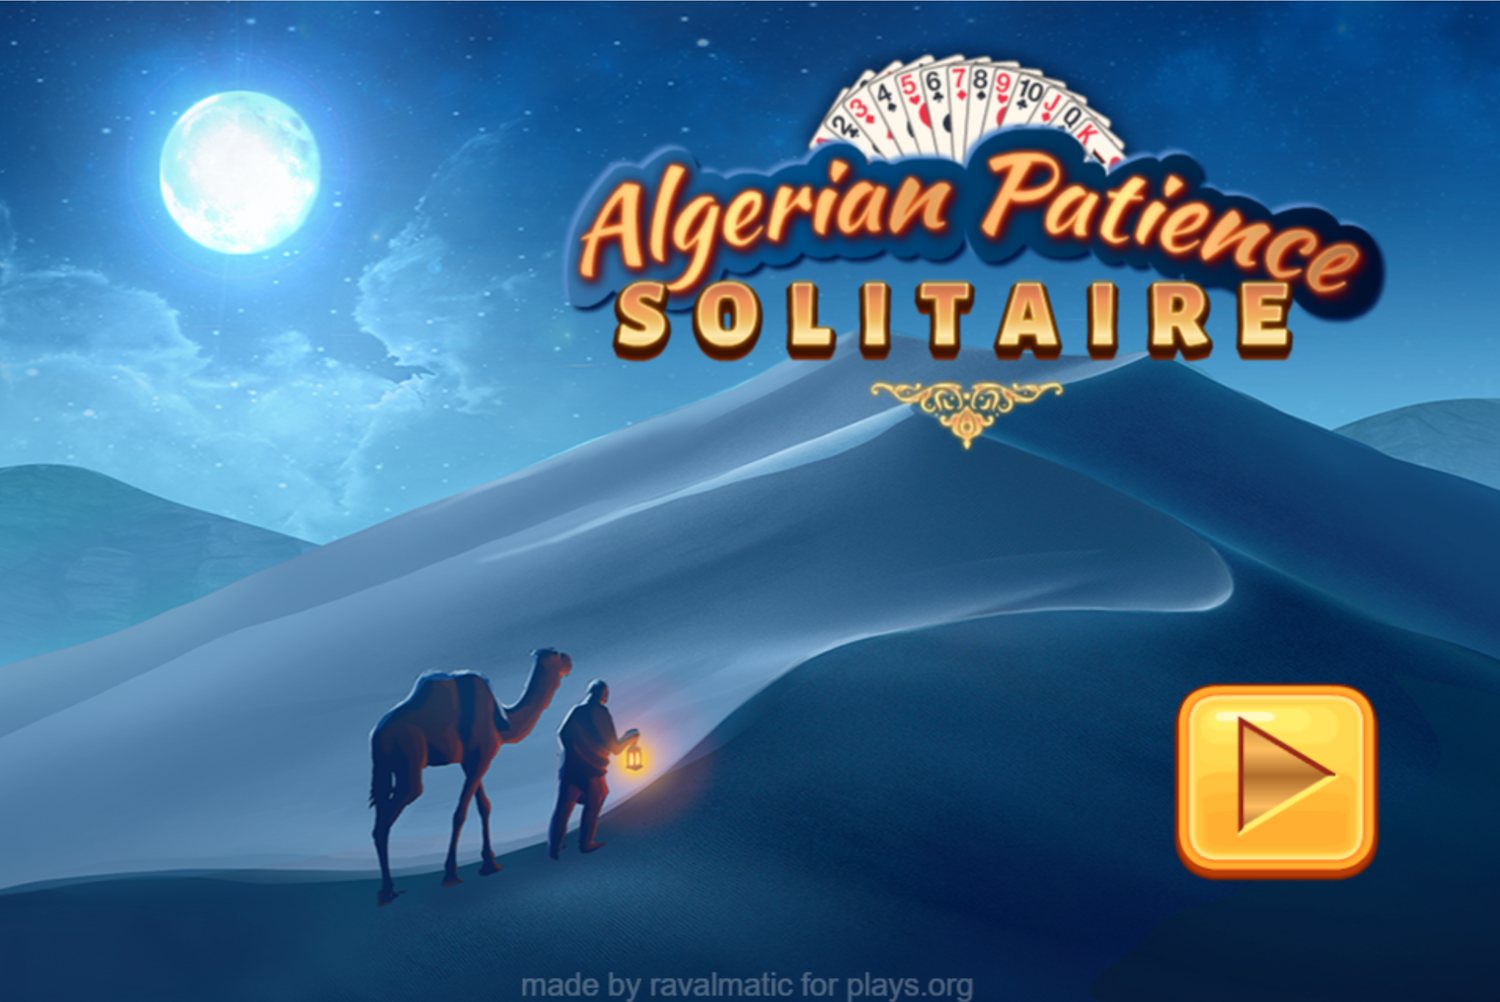 Algerian Patience Solitaire Welcome Screen Screenshot.